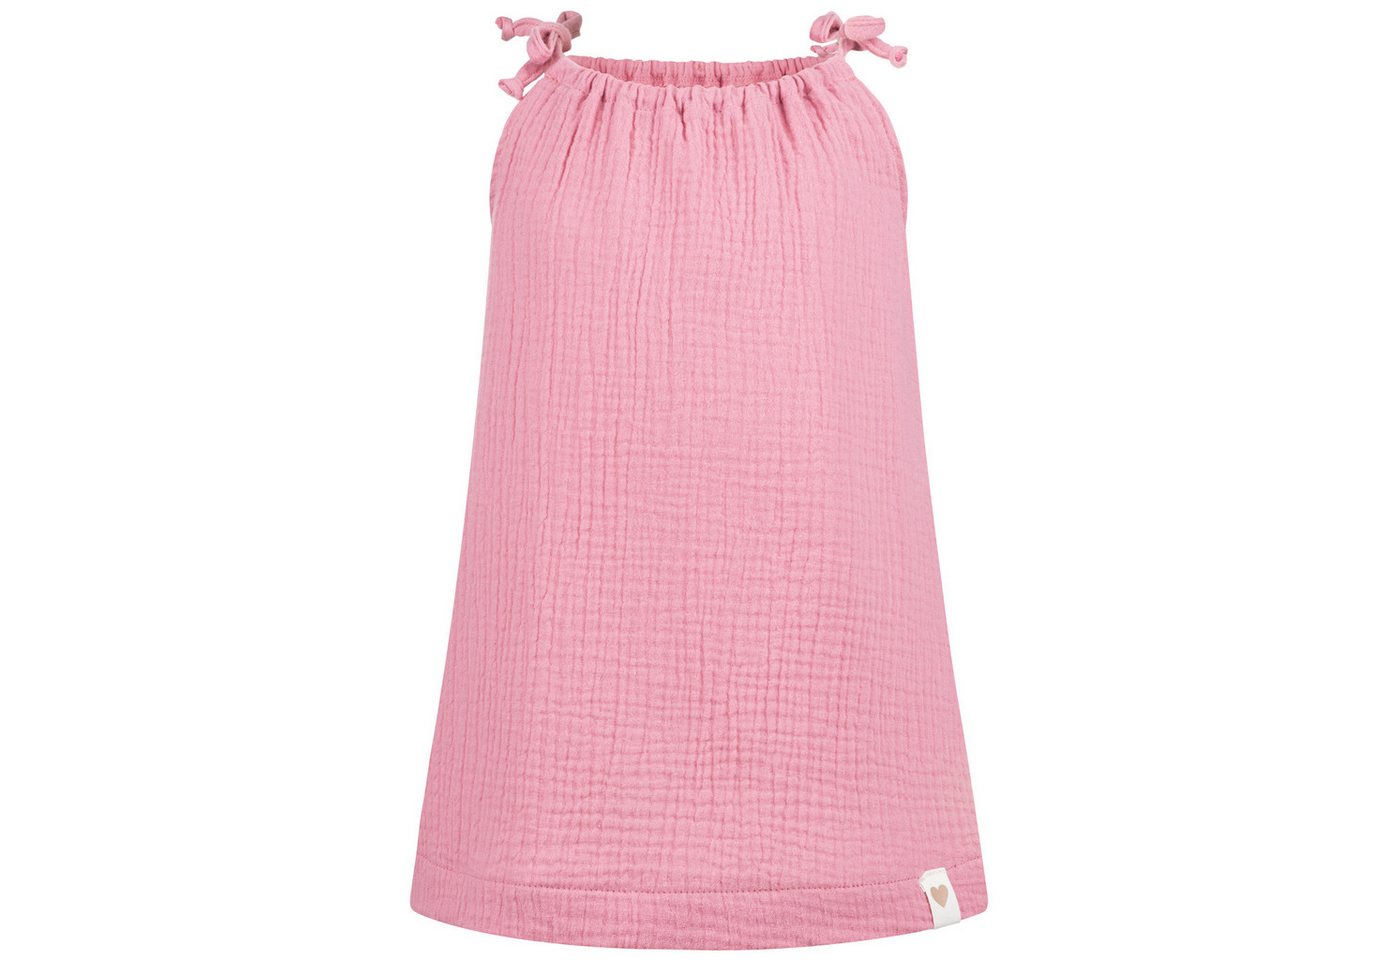 Smarilla Sommerkleid Trägerkleid Spaghetti-Trägerkleid Mädchenkleid Babykleid Musselin von Smarilla